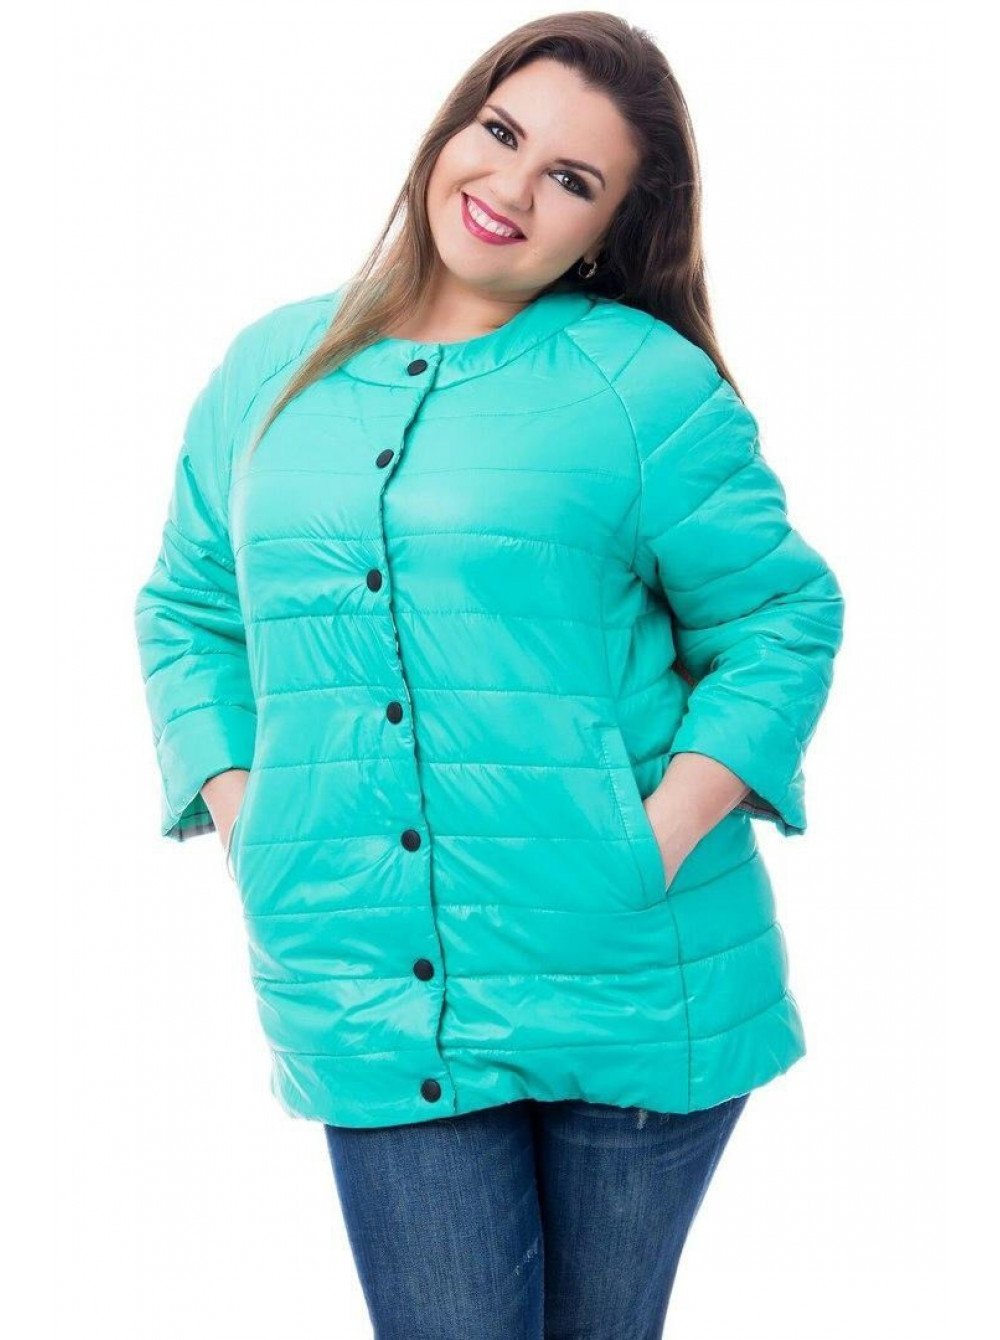 Осенние куртки больших размеров купить. Куртка демисезонная женская 54 размер Баттерфляй. Куртки для полных женщин. Стильные куртки для полных женщин.